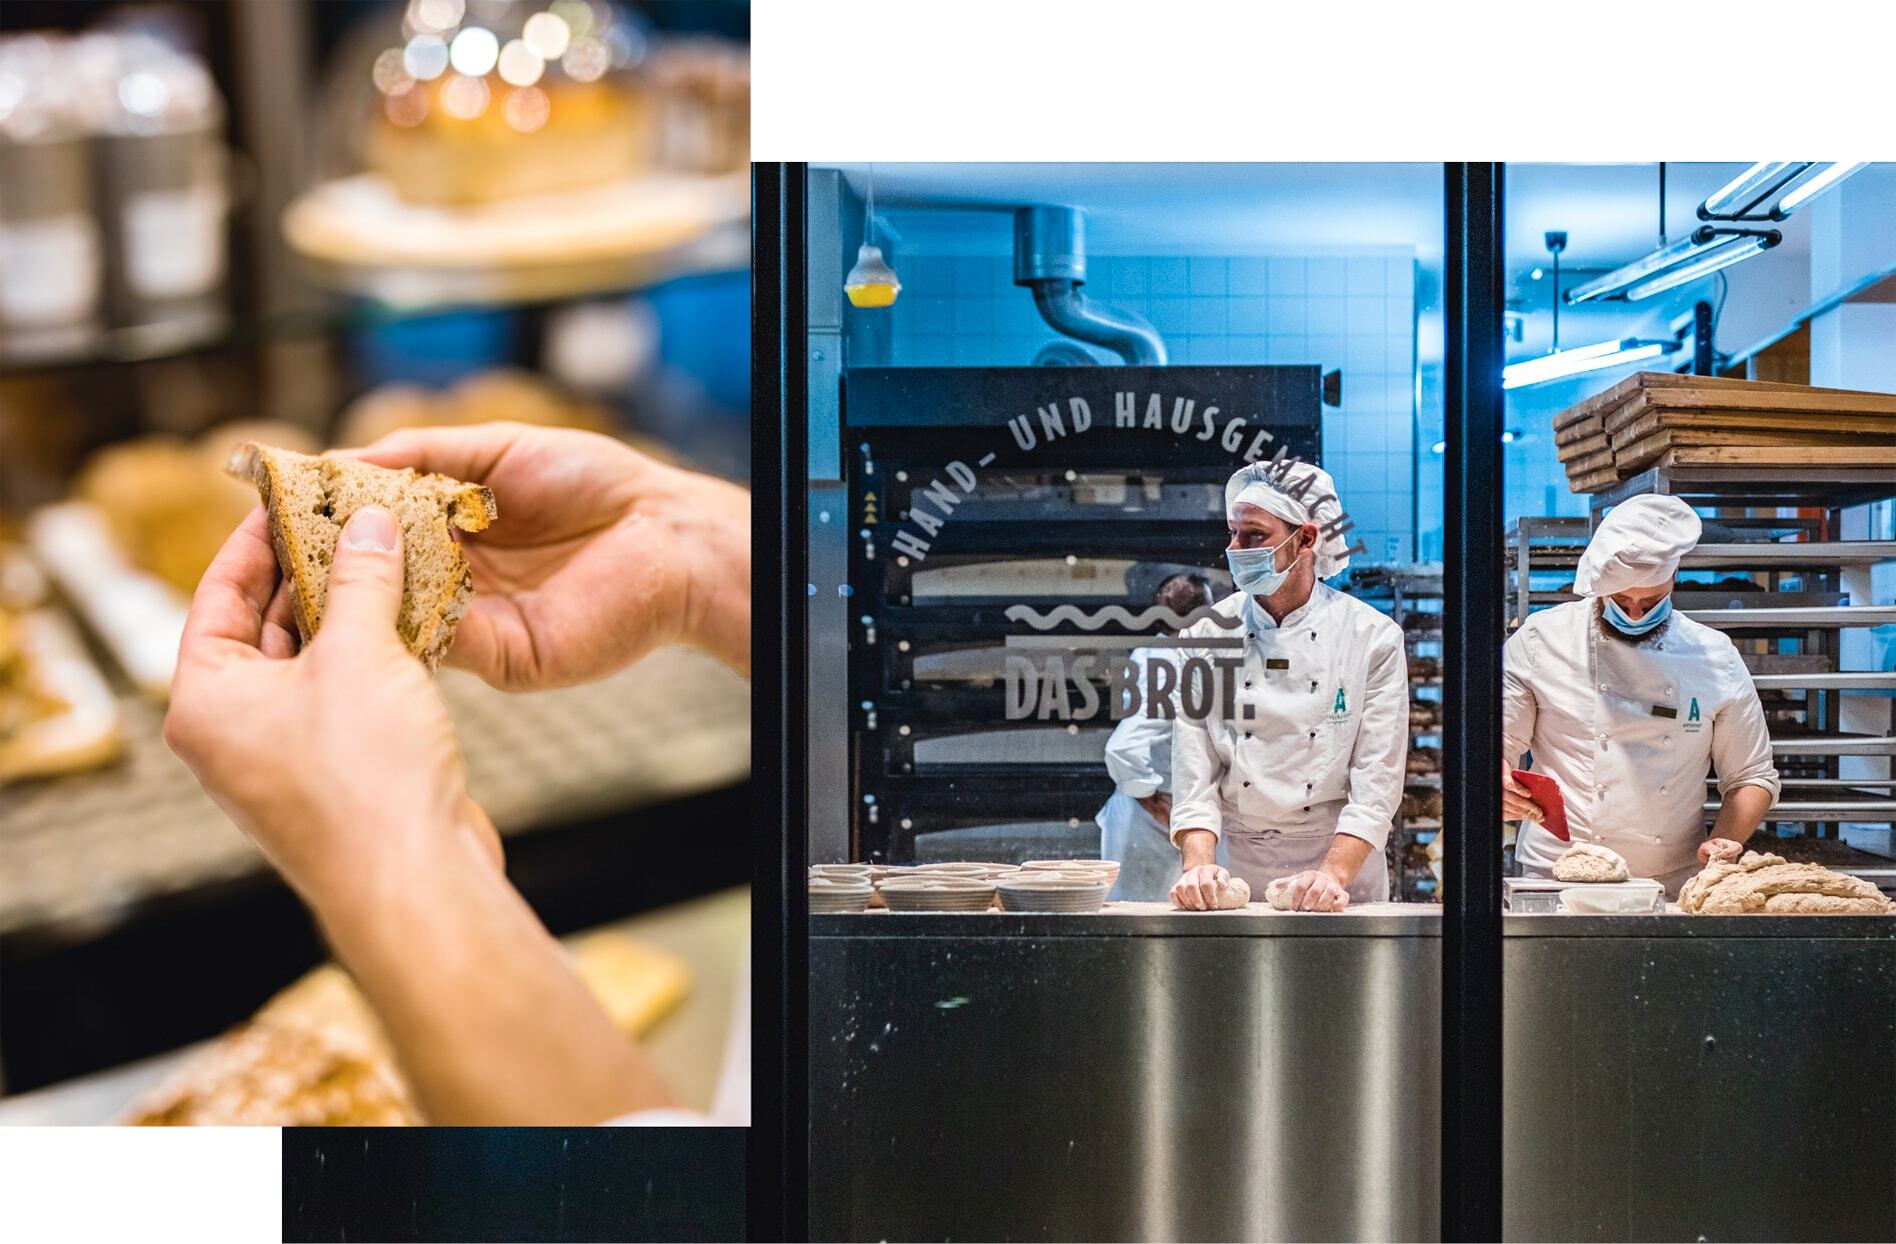 Collage aus zwei Bildern. Links: Hände halten eine Brotscheibe. Rechts: Drei brotbackende Menschen hinter einer Glasfront in einer Backstube.